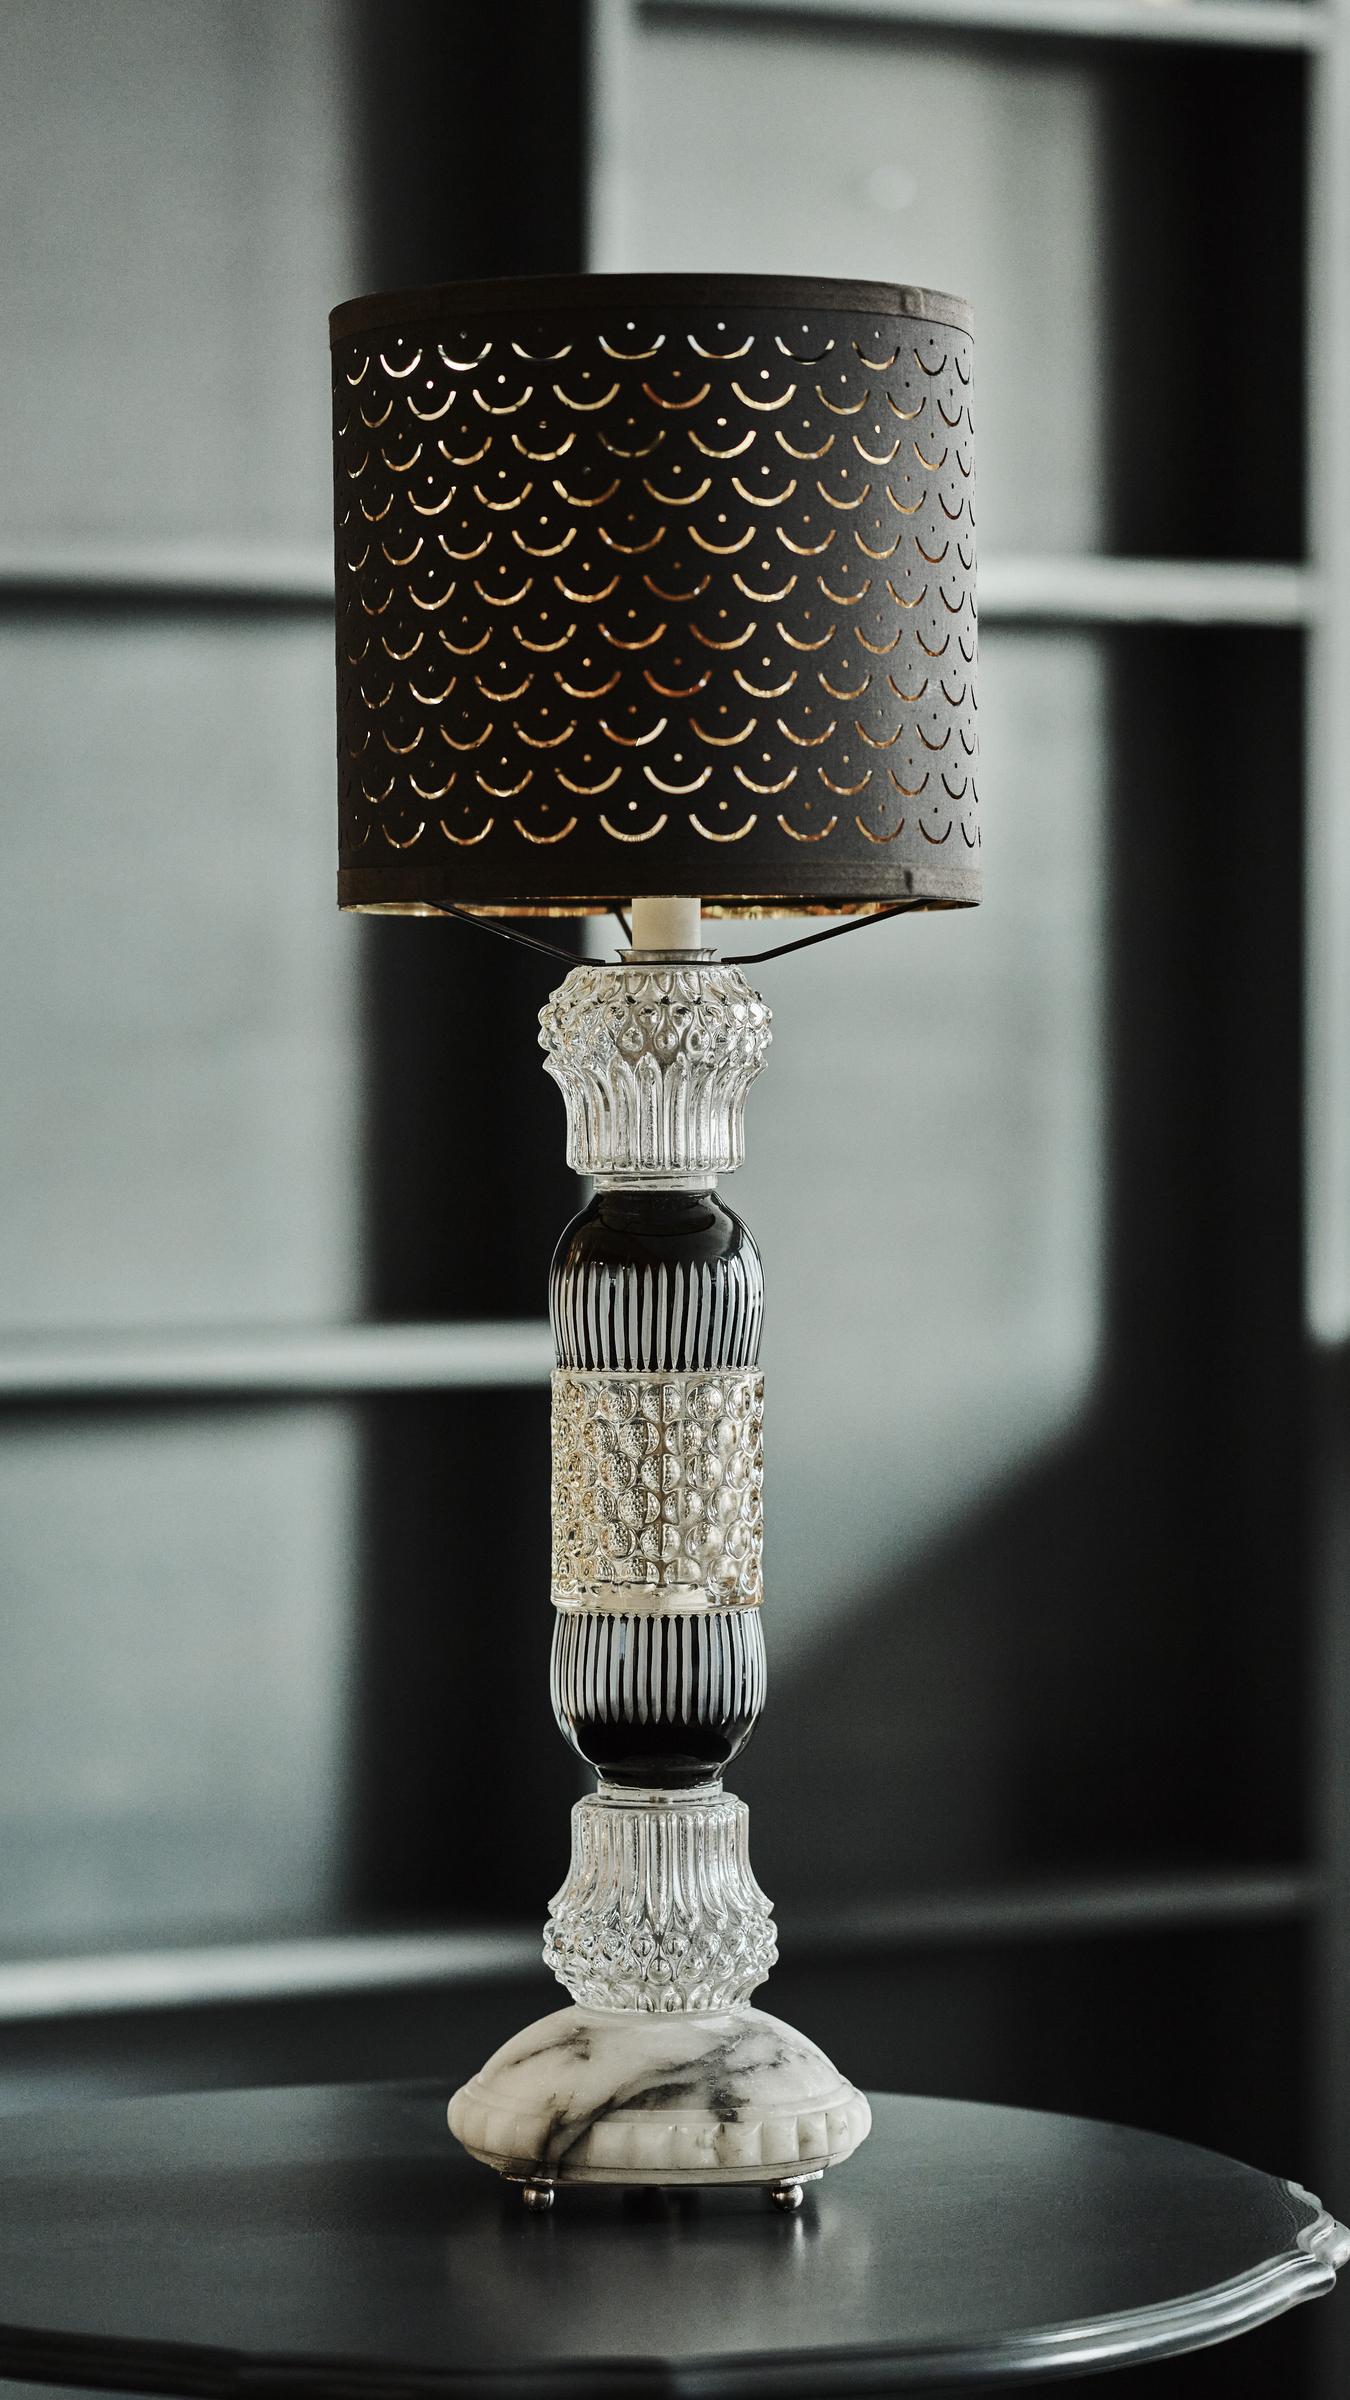 Lampe laget av gjenbruksmaterialer. Lampefot av gamle krukker og vaser. Foto